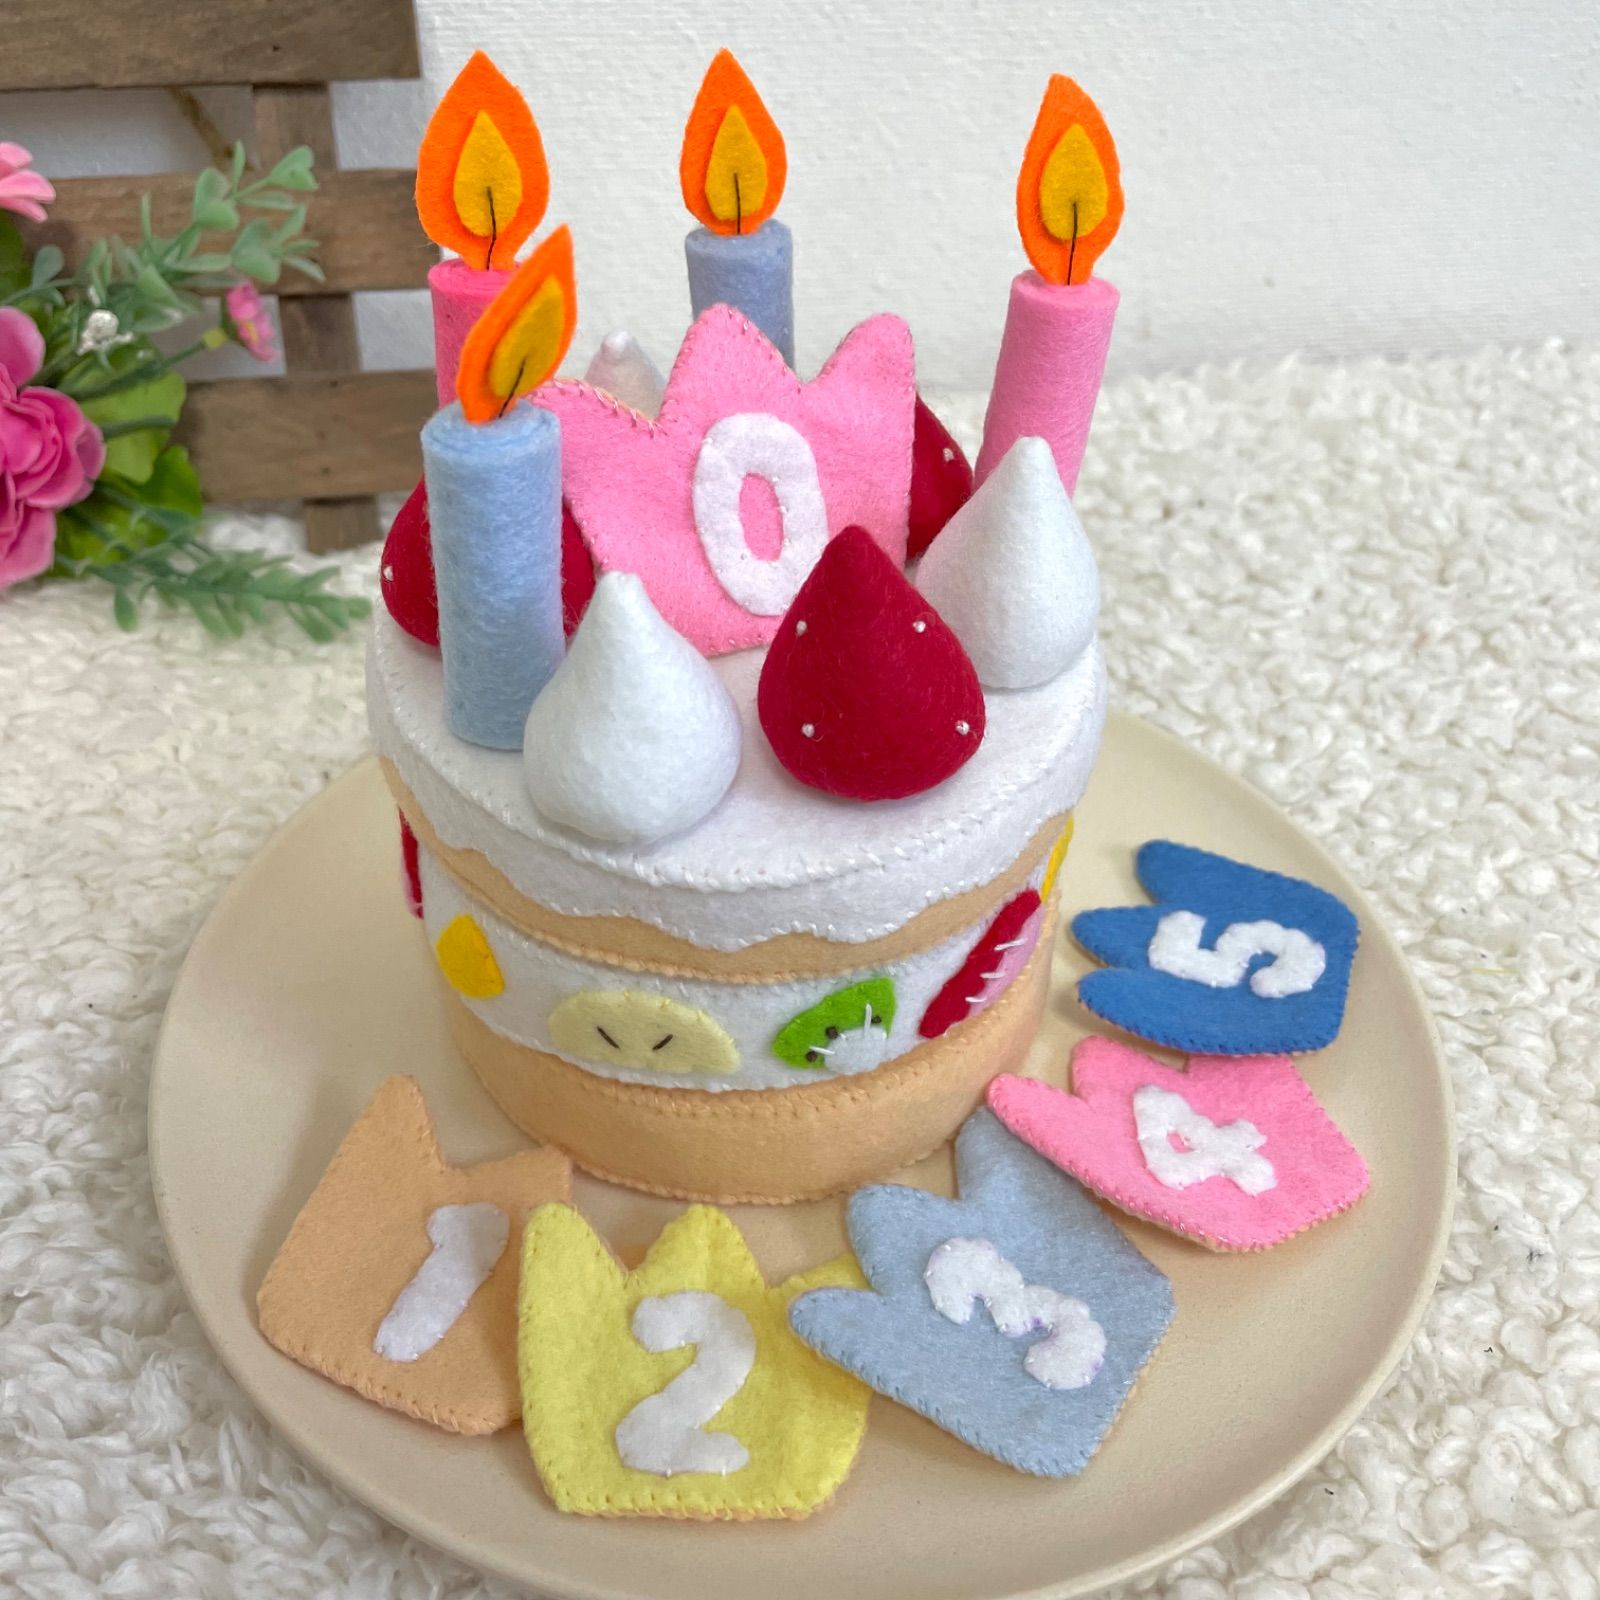 フェルトままごと お誕生日ケーキ - メルカリShops